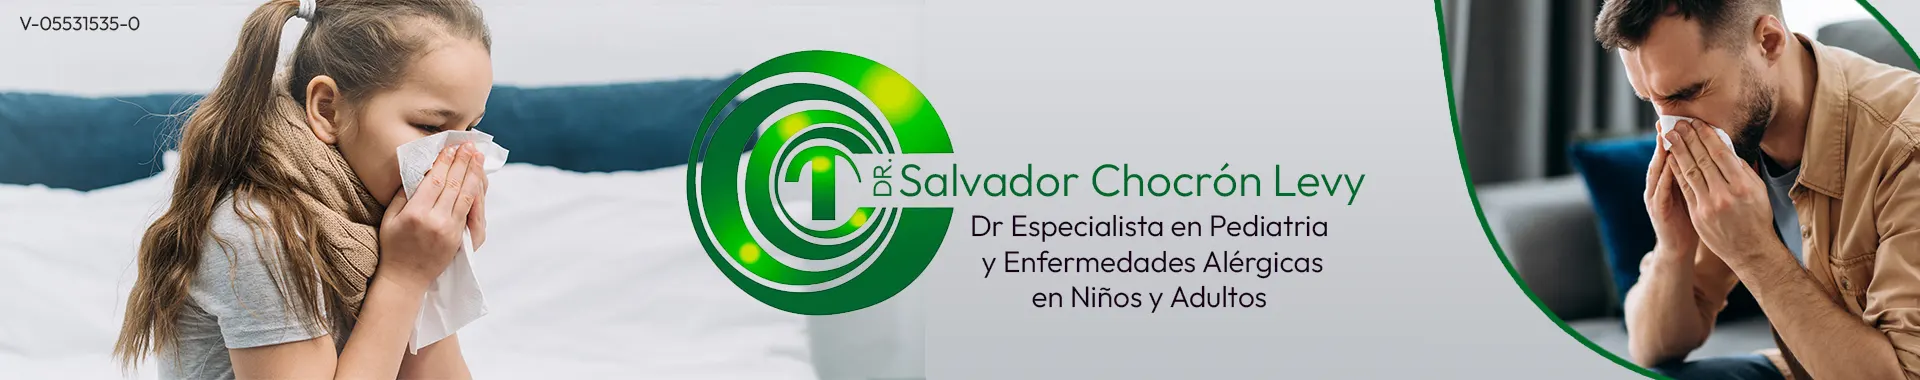 Imagen 1 del perfil de Dr. Salvador Chocron Levy